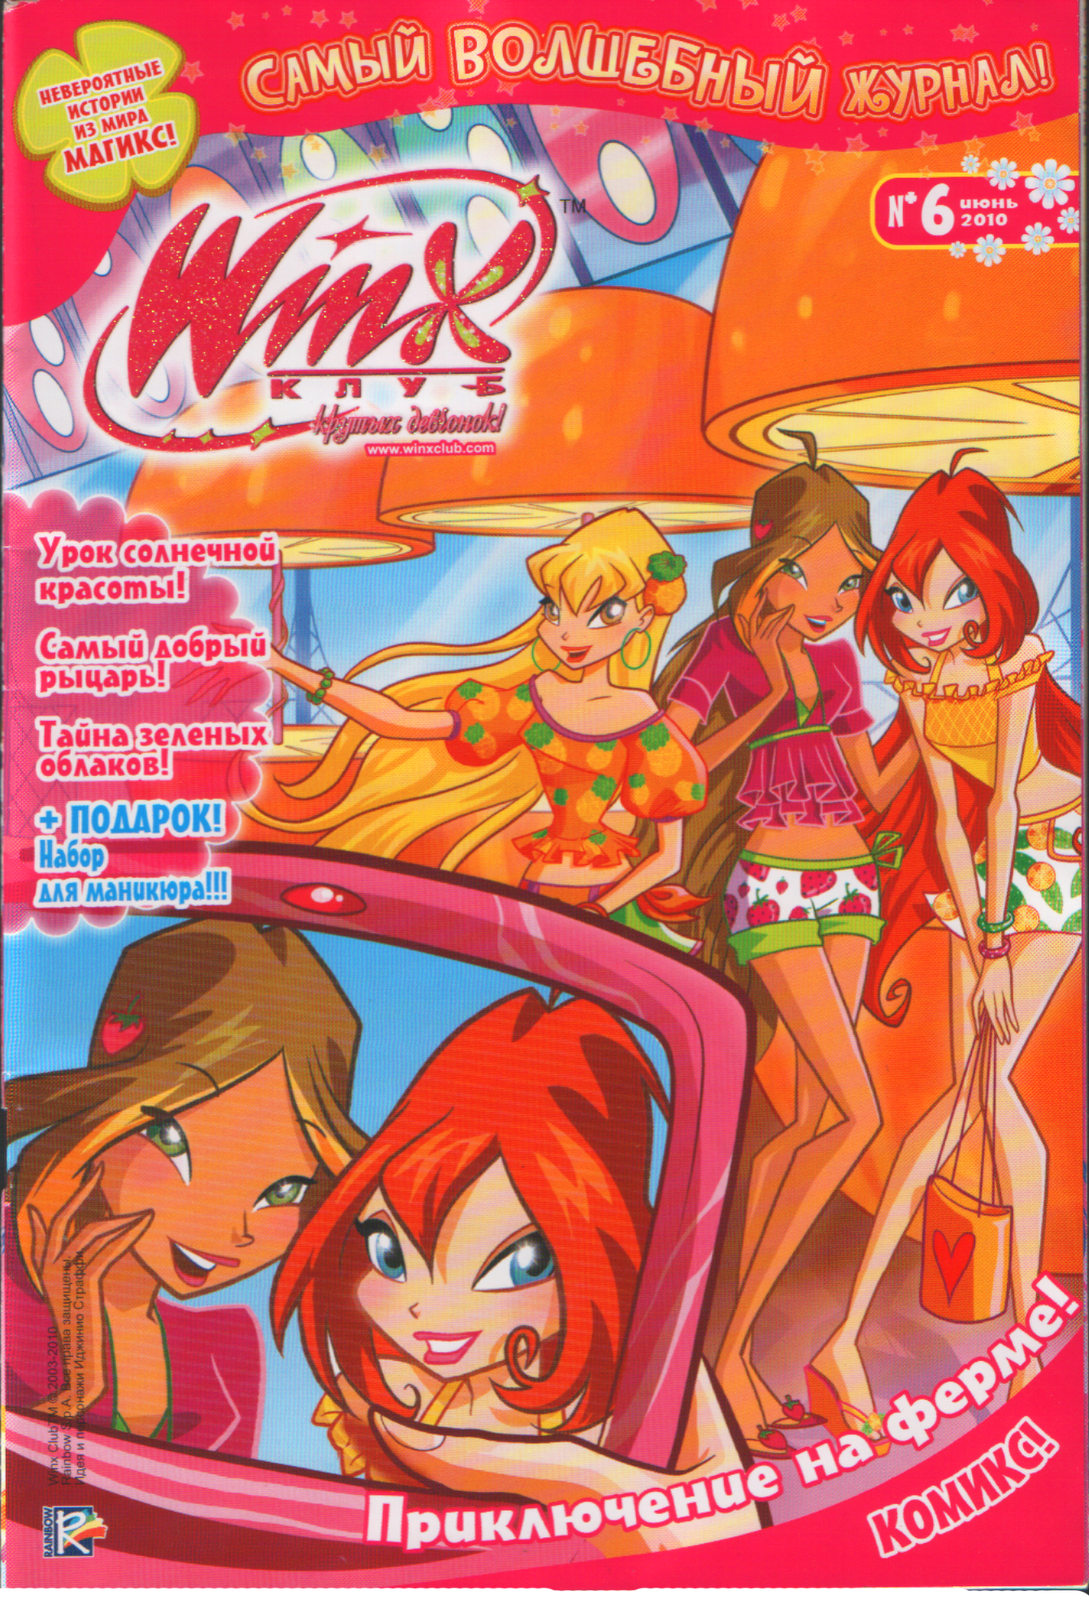 WinX. Клуб крутых девчонок - самый волшебный журнал для девчонок